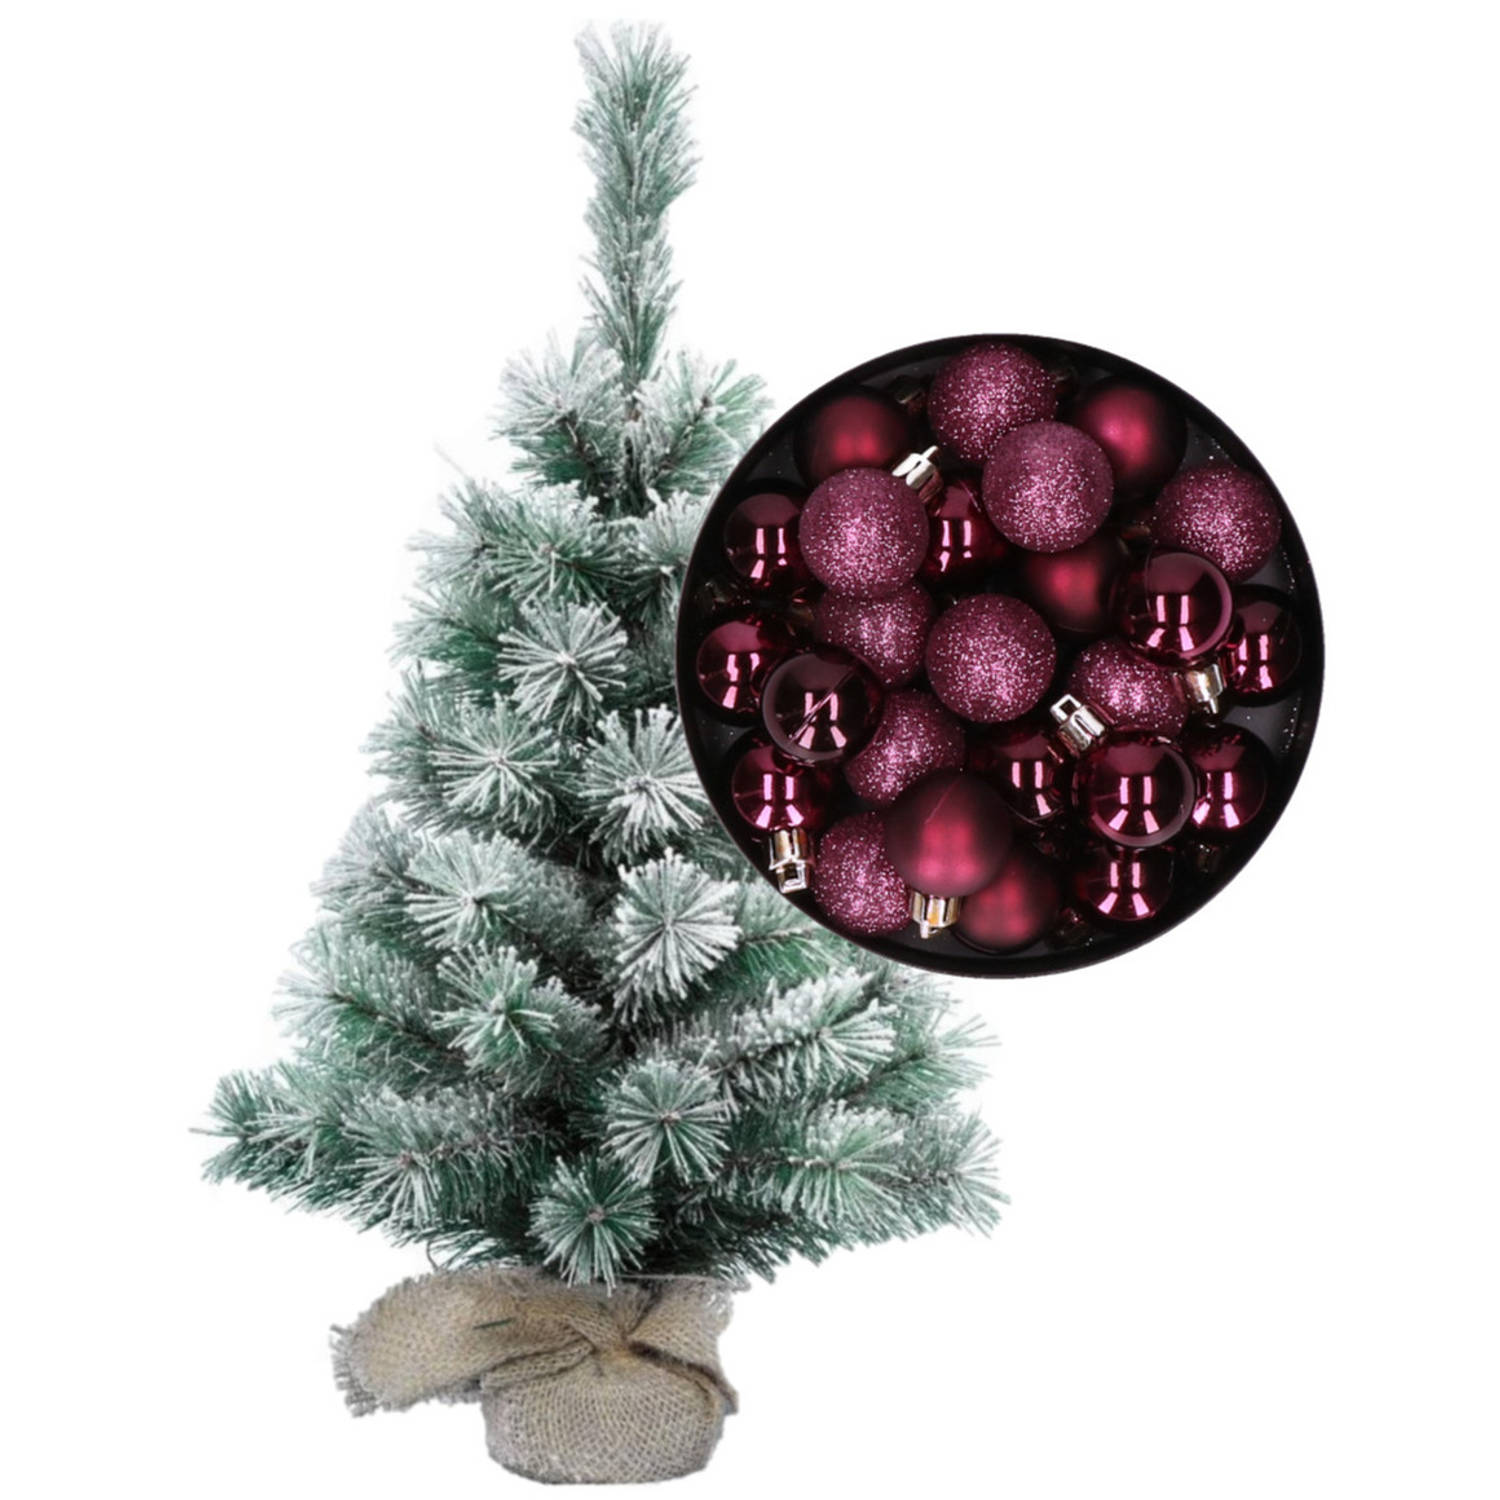 Besneeuwde mini kerstboom-kunst kerstboom 35 cm met kerstballen aubergine paars Kunstkerstboom